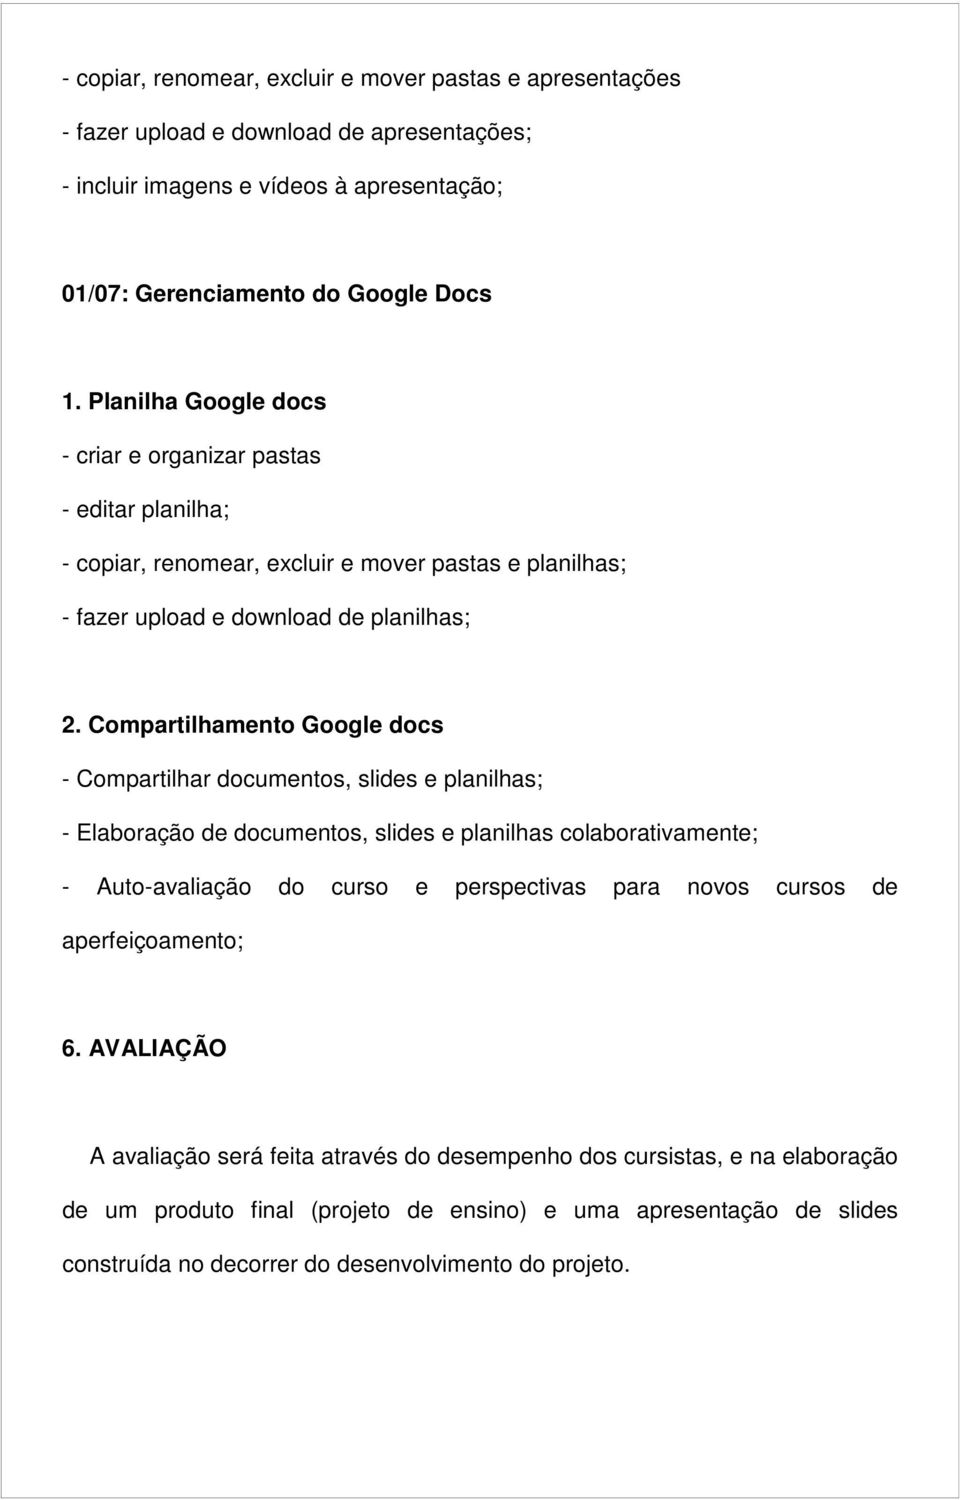 Compartilhamento Google docs - Compartilhar documentos, slides e planilhas; - Elaboração de documentos, slides e planilhas colaborativamente; - Auto-avaliação do curso e perspectivas para